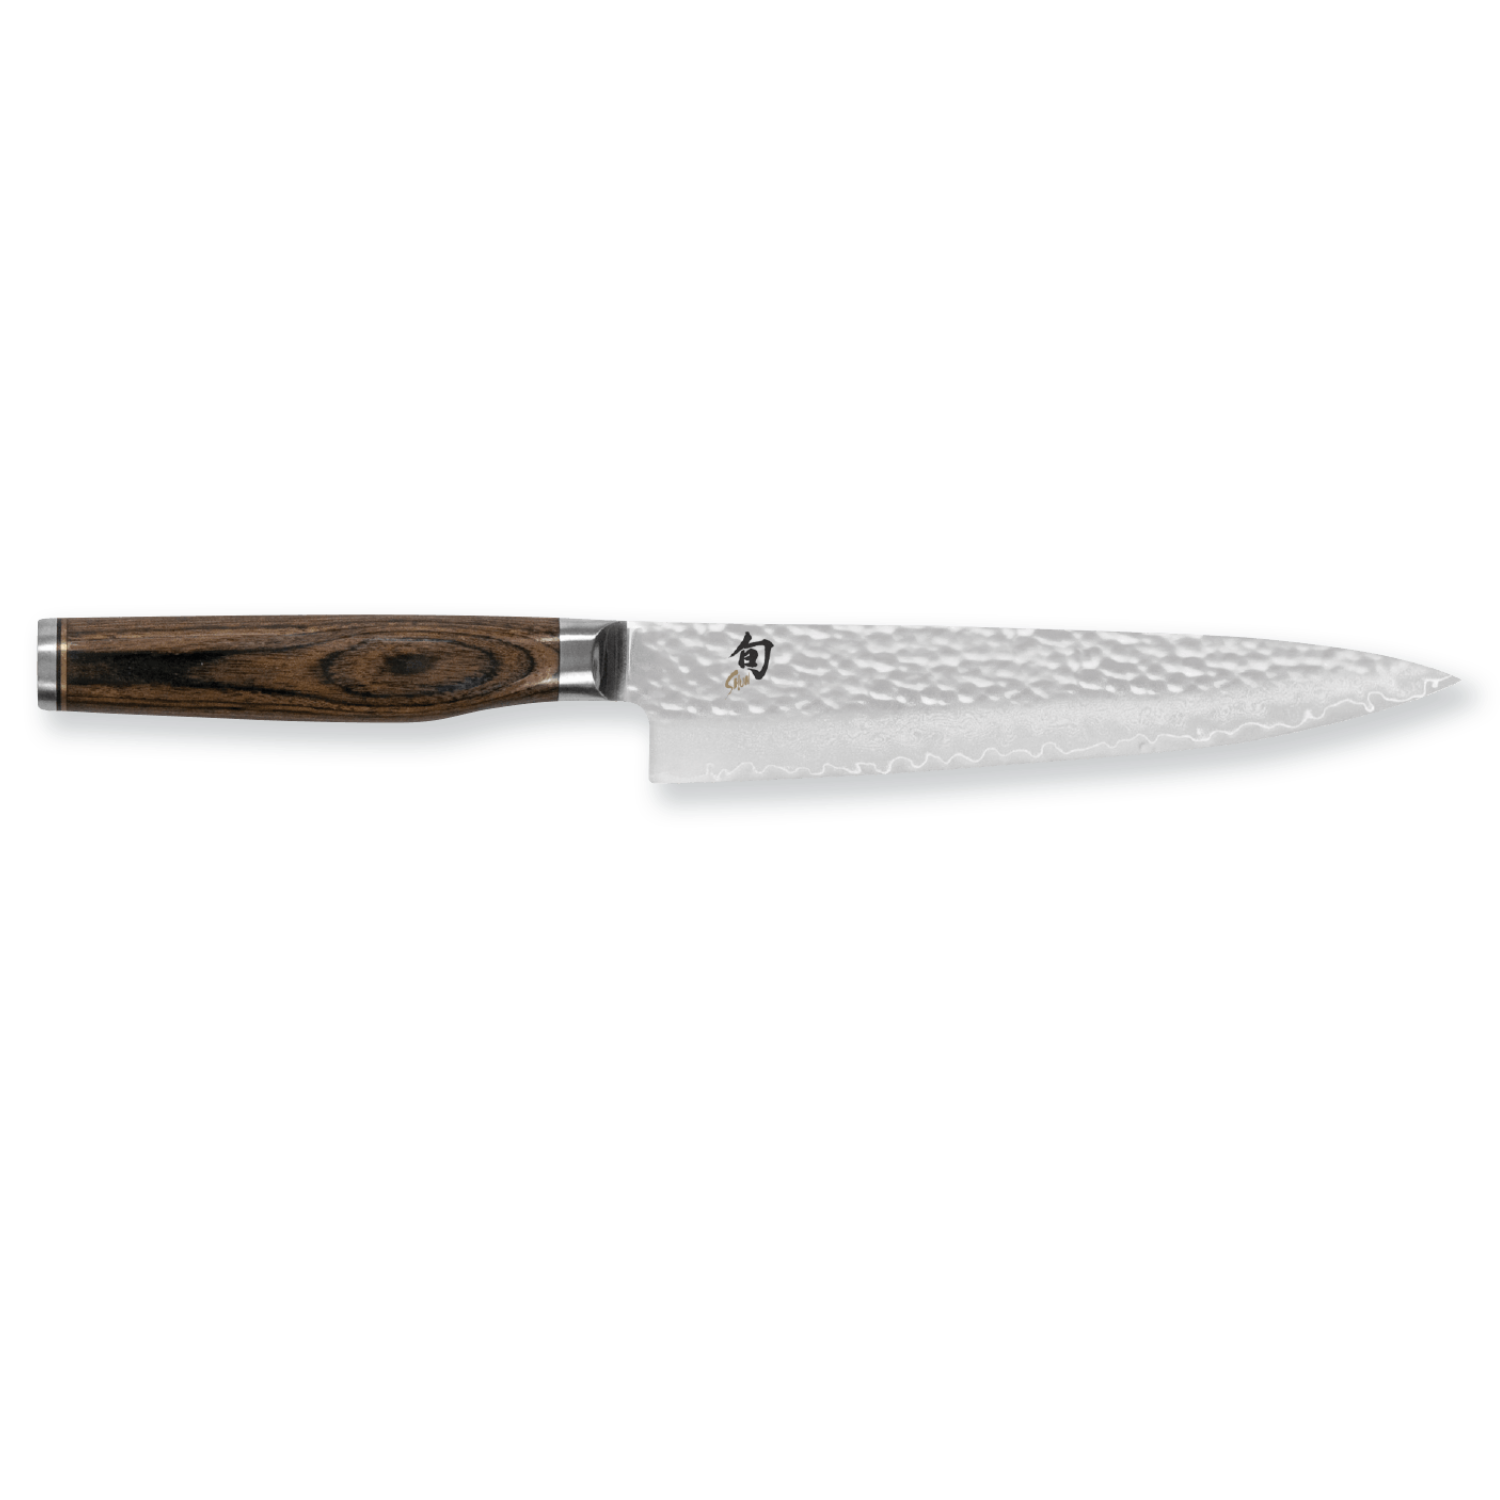 Kai Shun Premier Utility Knife 16.5cm